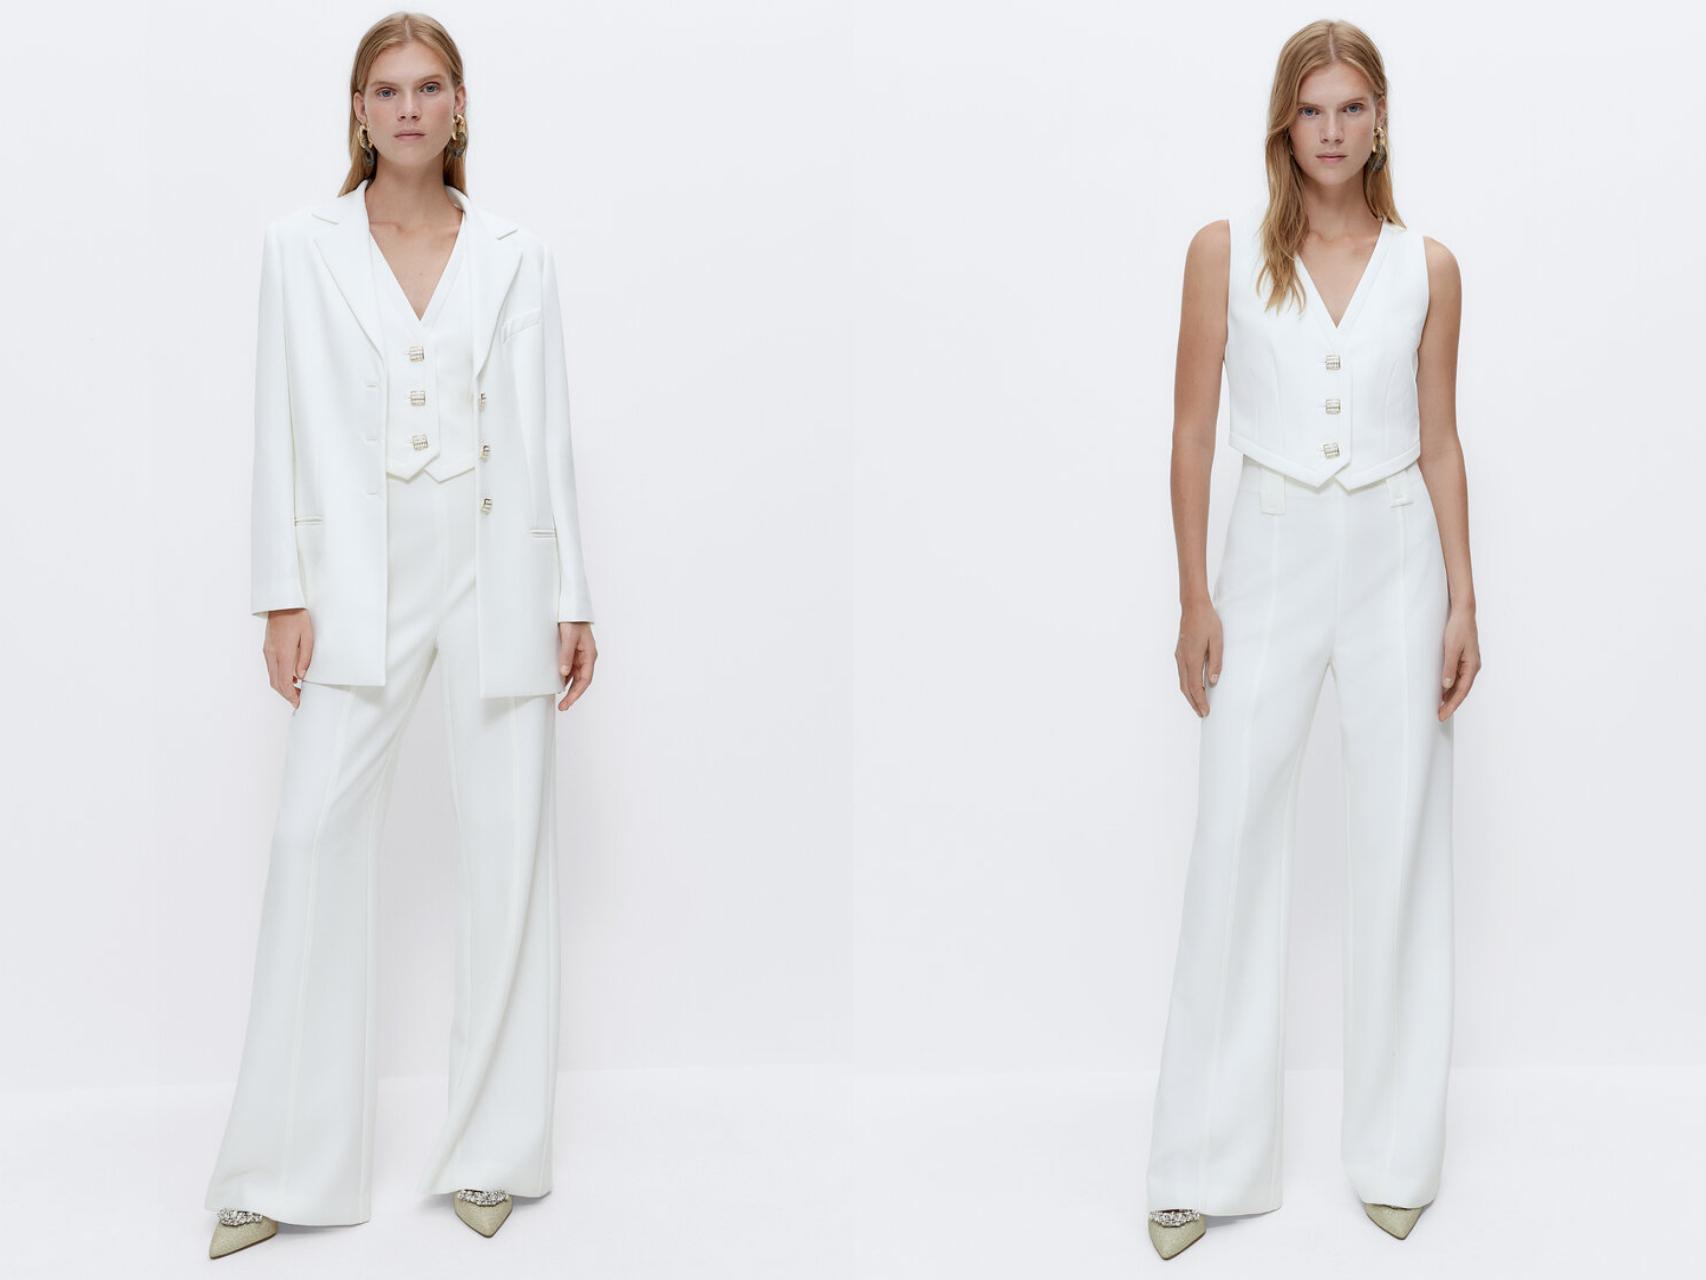 Uterqüe quiere que cases con traje blanco más impresionante (y querrás aunque no en boda)